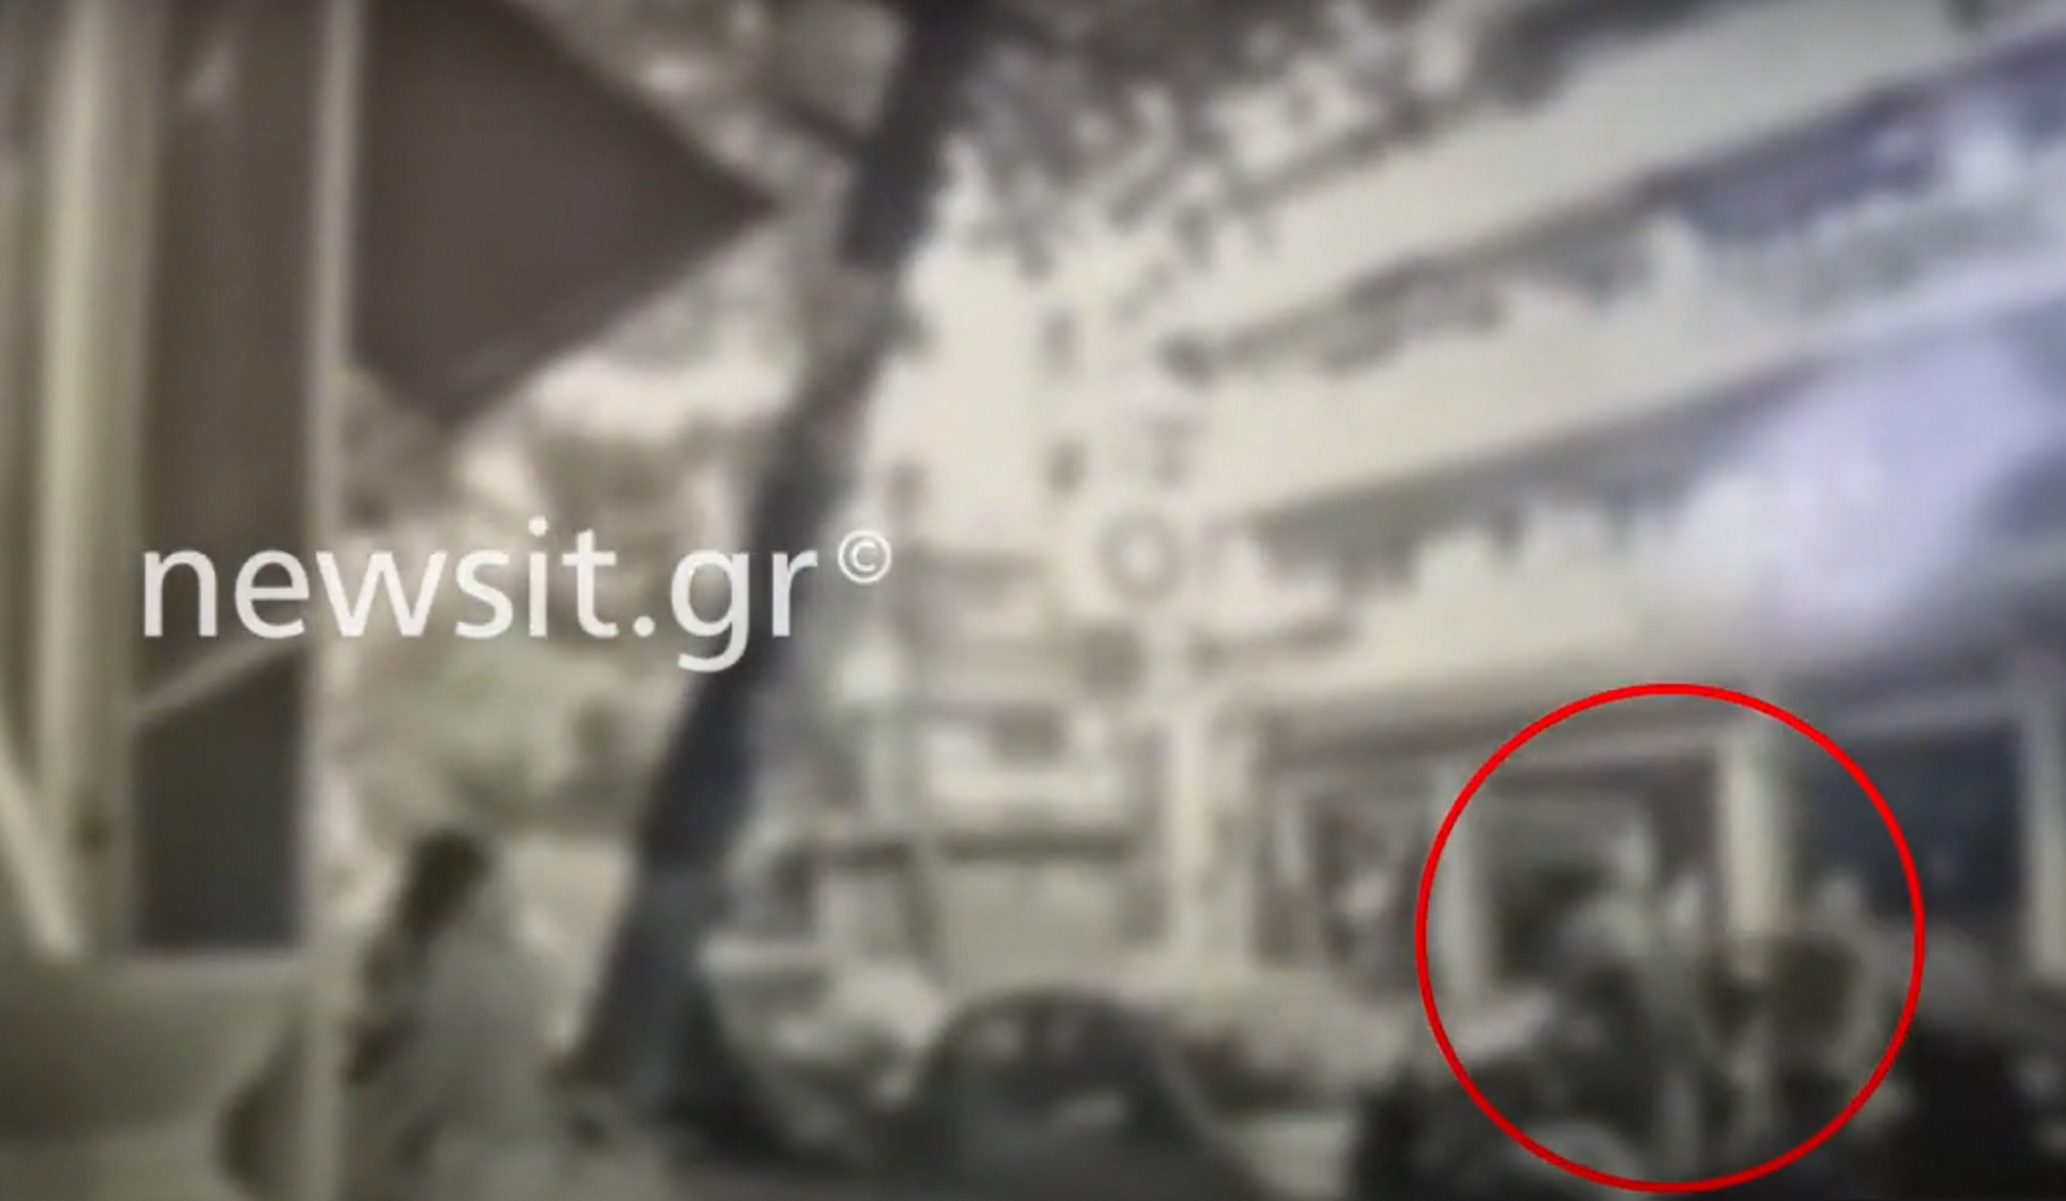 Θεσσαλονίκη: Βίντεο ντοκουμέντο του newsit.gr από την επίθεση του οδηγού στους δημοτικούς αστυνομικούς για μία κλήση